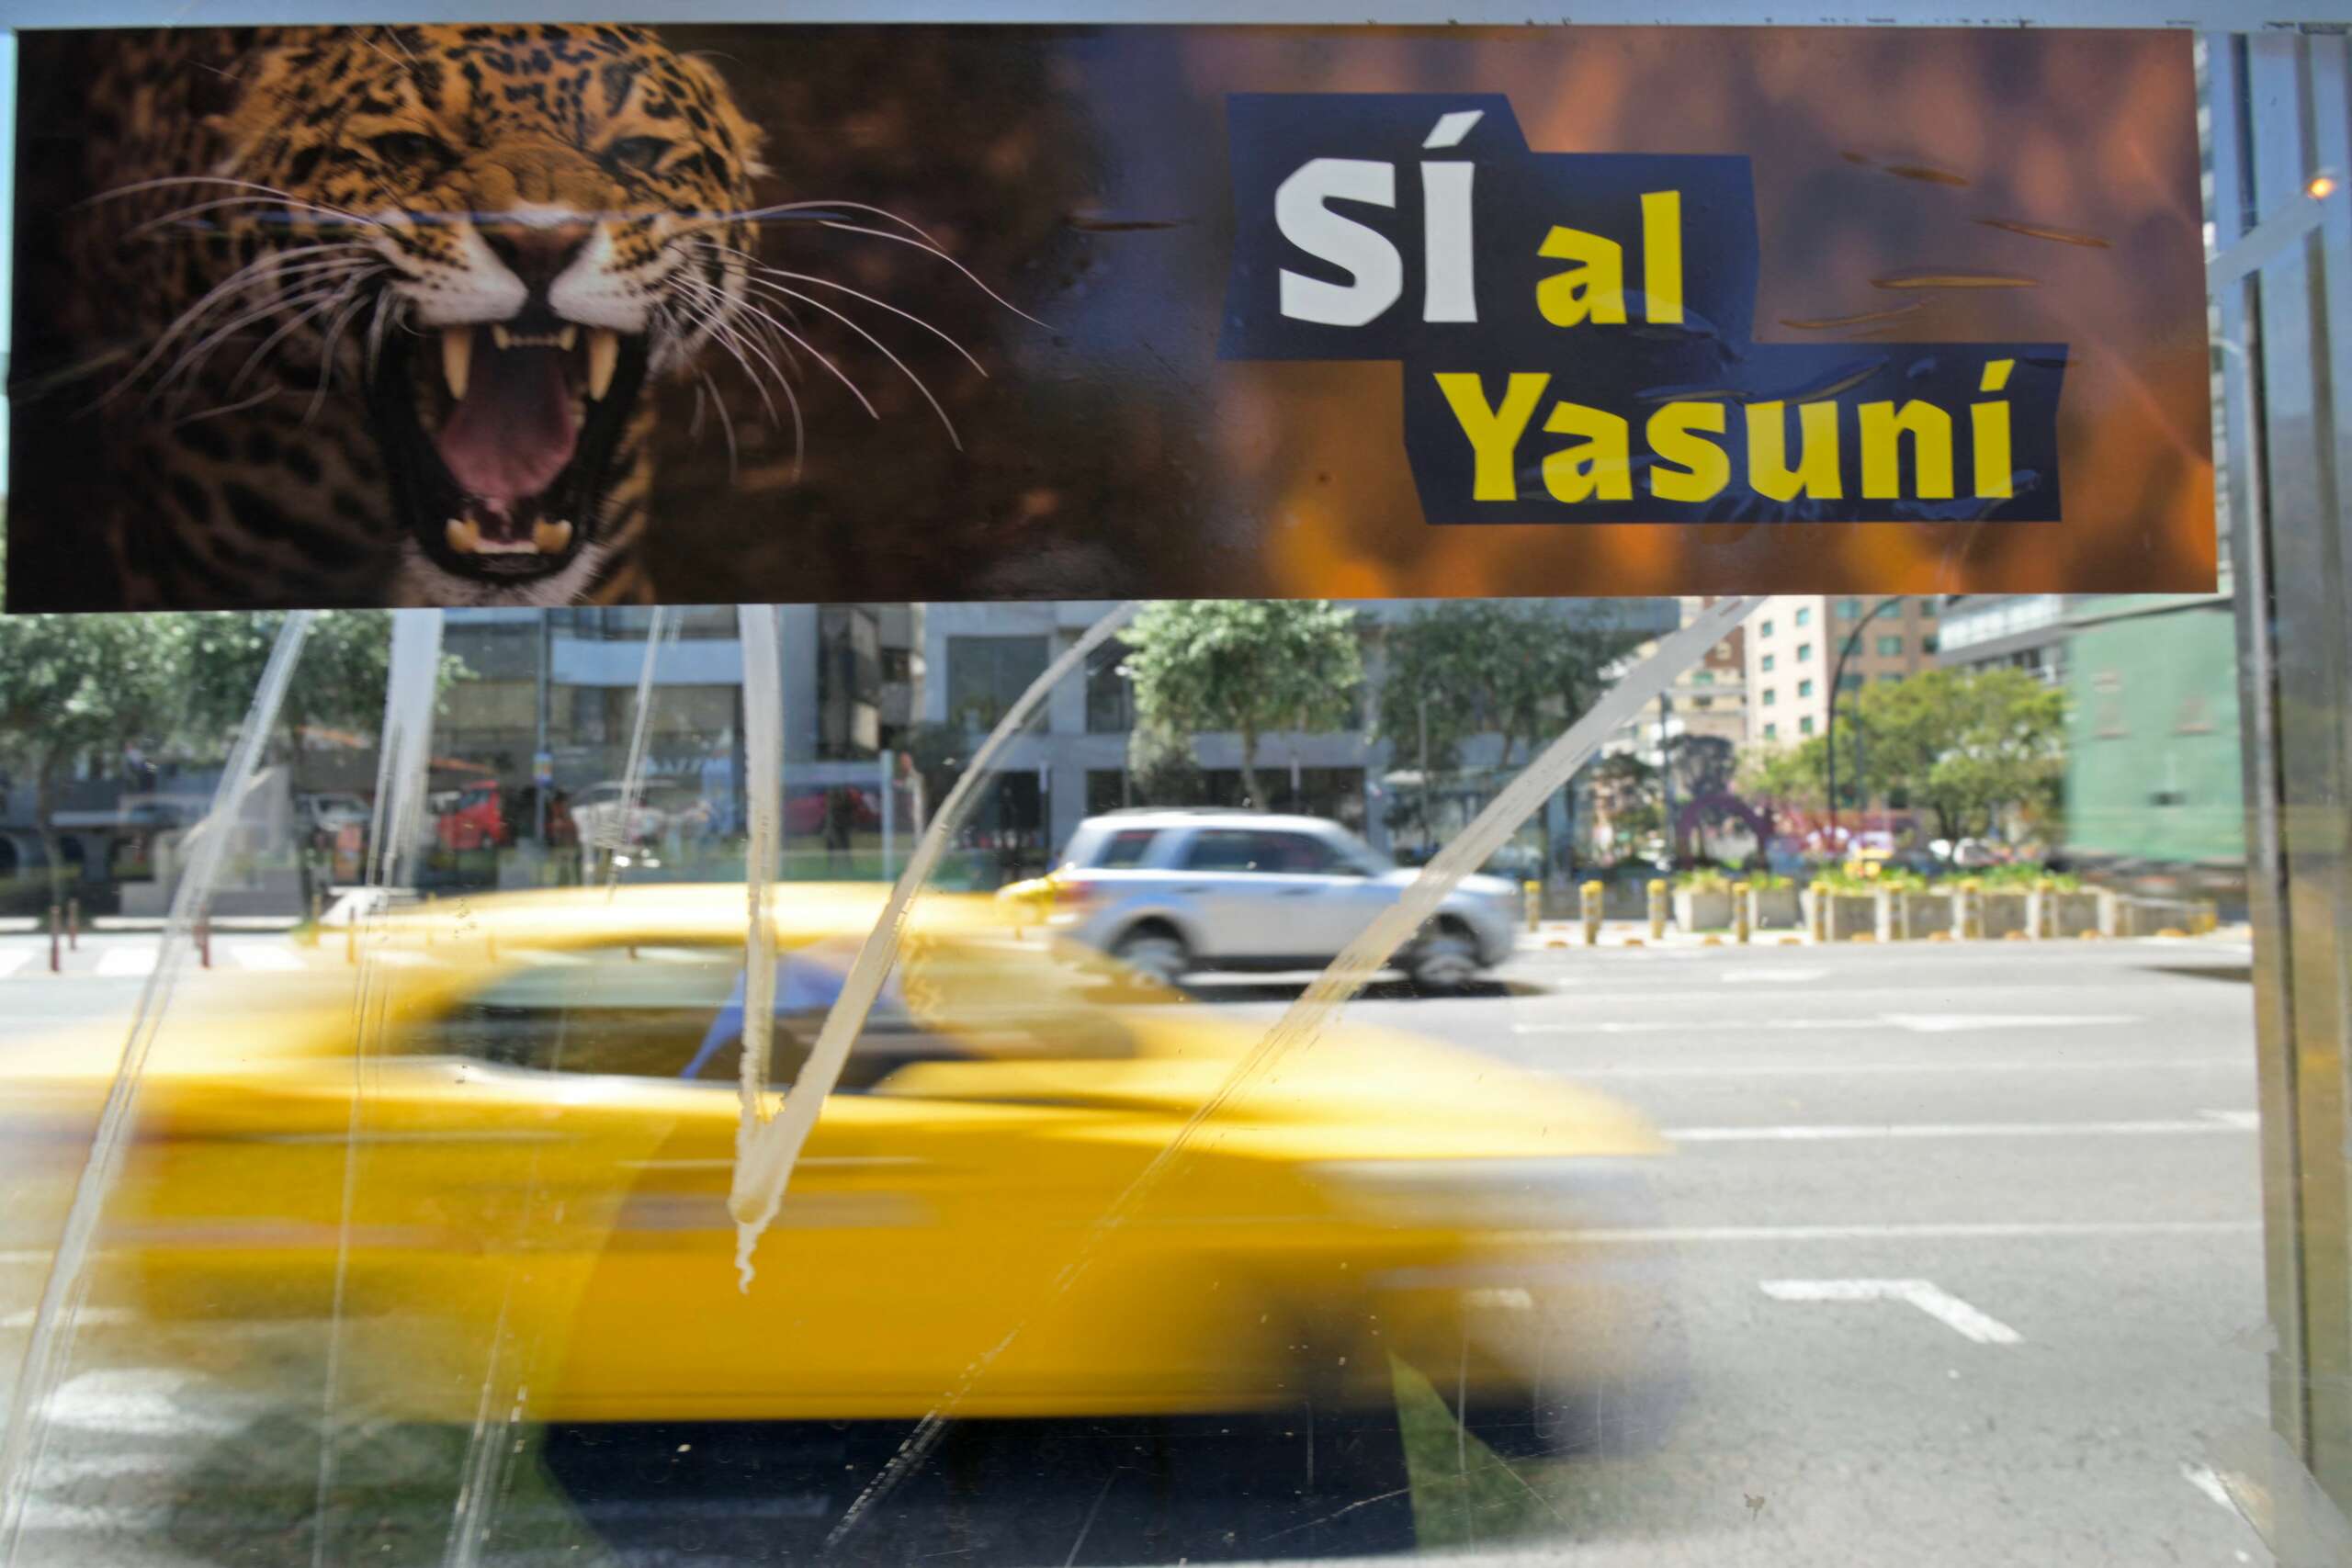 "Si al Yasuni" sticker at bus station in Quito, Ecuador